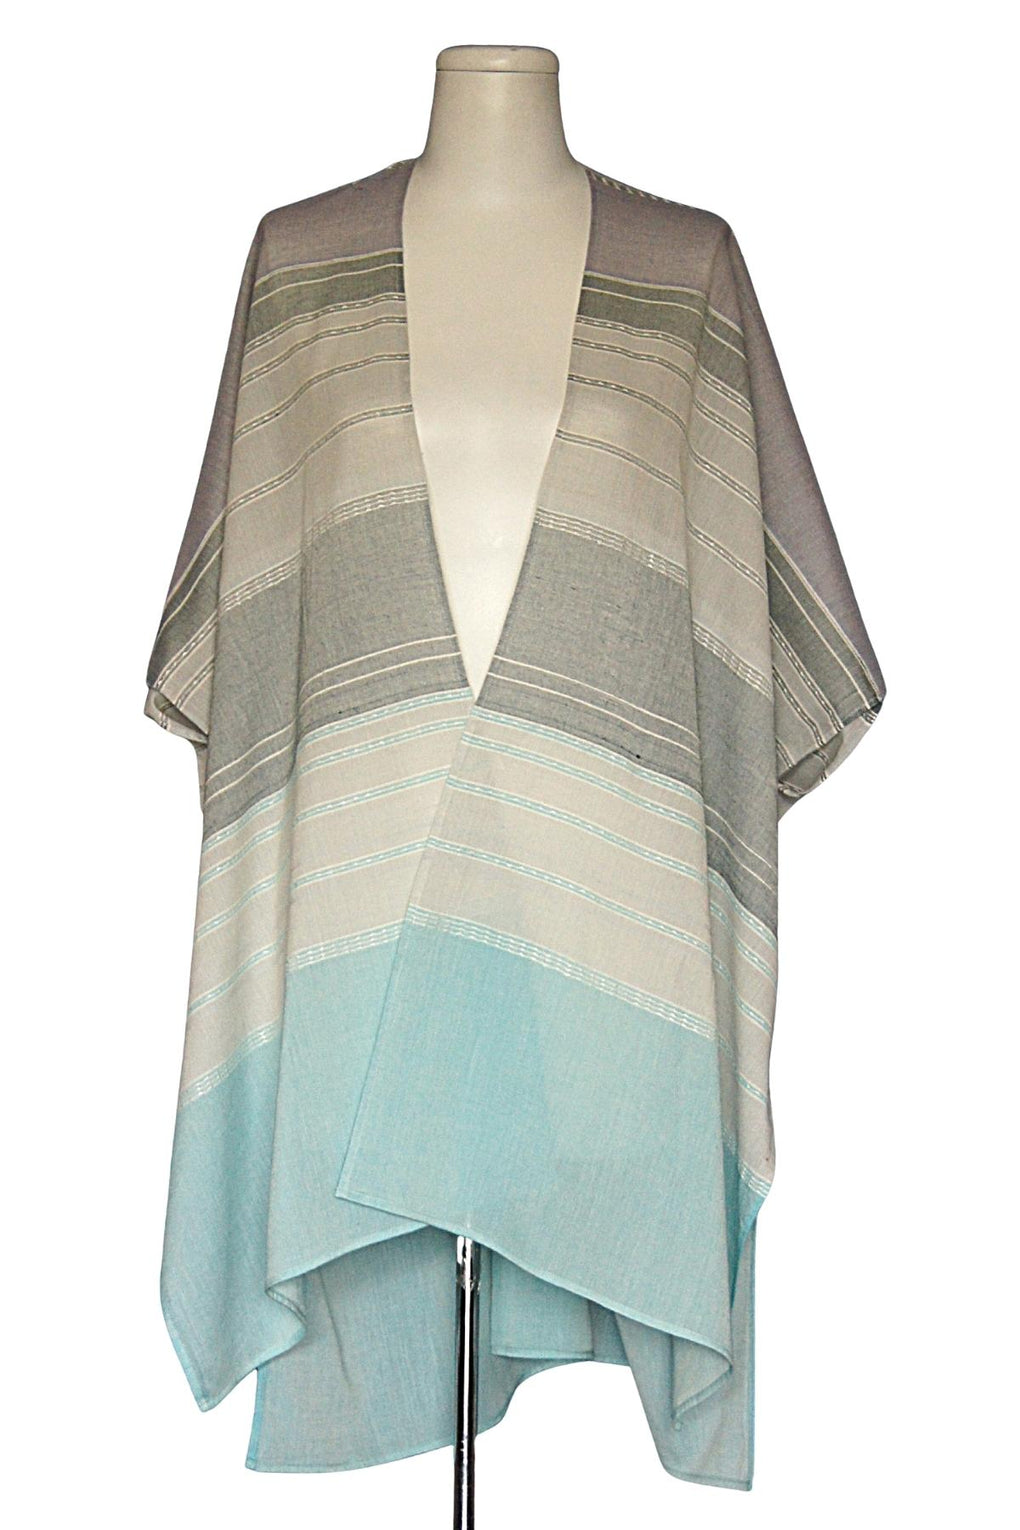 Jacquard Horizontal Panels Kimono (SE-2354_Blue)